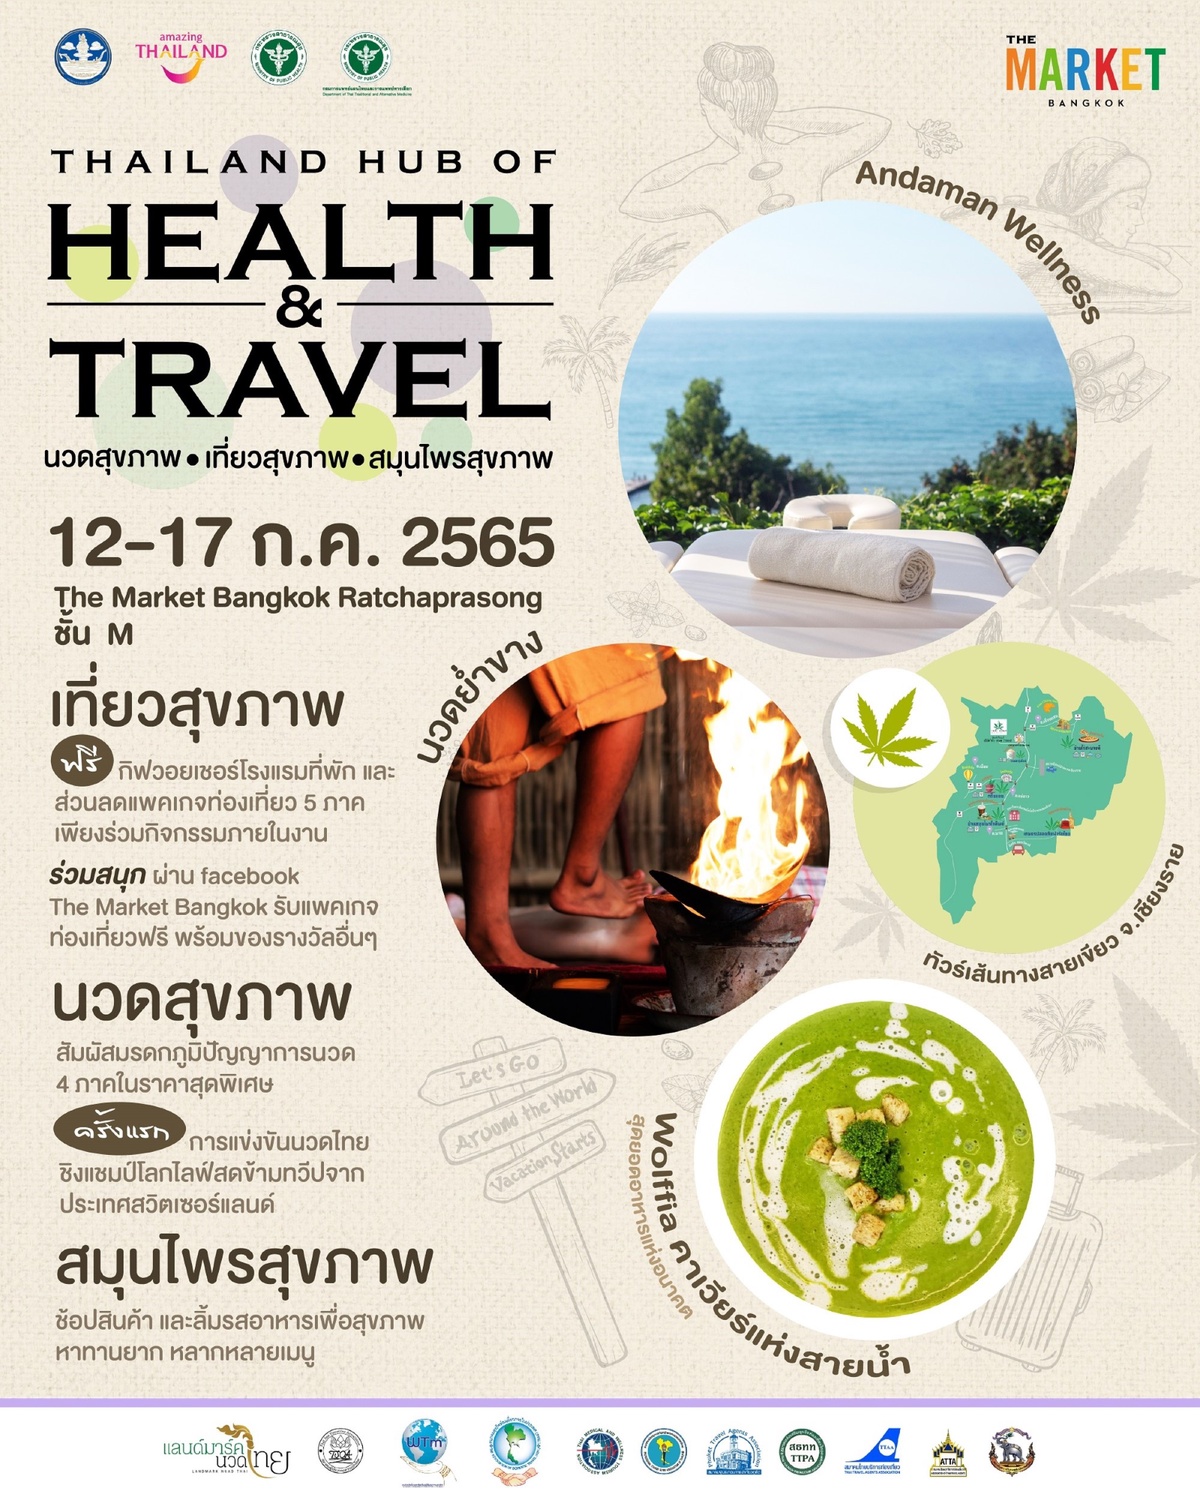 ชวนเที่ยวสุขภาพ นวดสุขภาพ สมุนไพรสุขภาพ สุดยิ่งใหญ่ประจำปี ในงาน Thailand Hub of Health Travel ณ ศูนย์การค้า เดอะ มาร์เก็ต แบงคอก (ราชประสงค์) ชั้น M วันที่ 12-17 ก.ค.